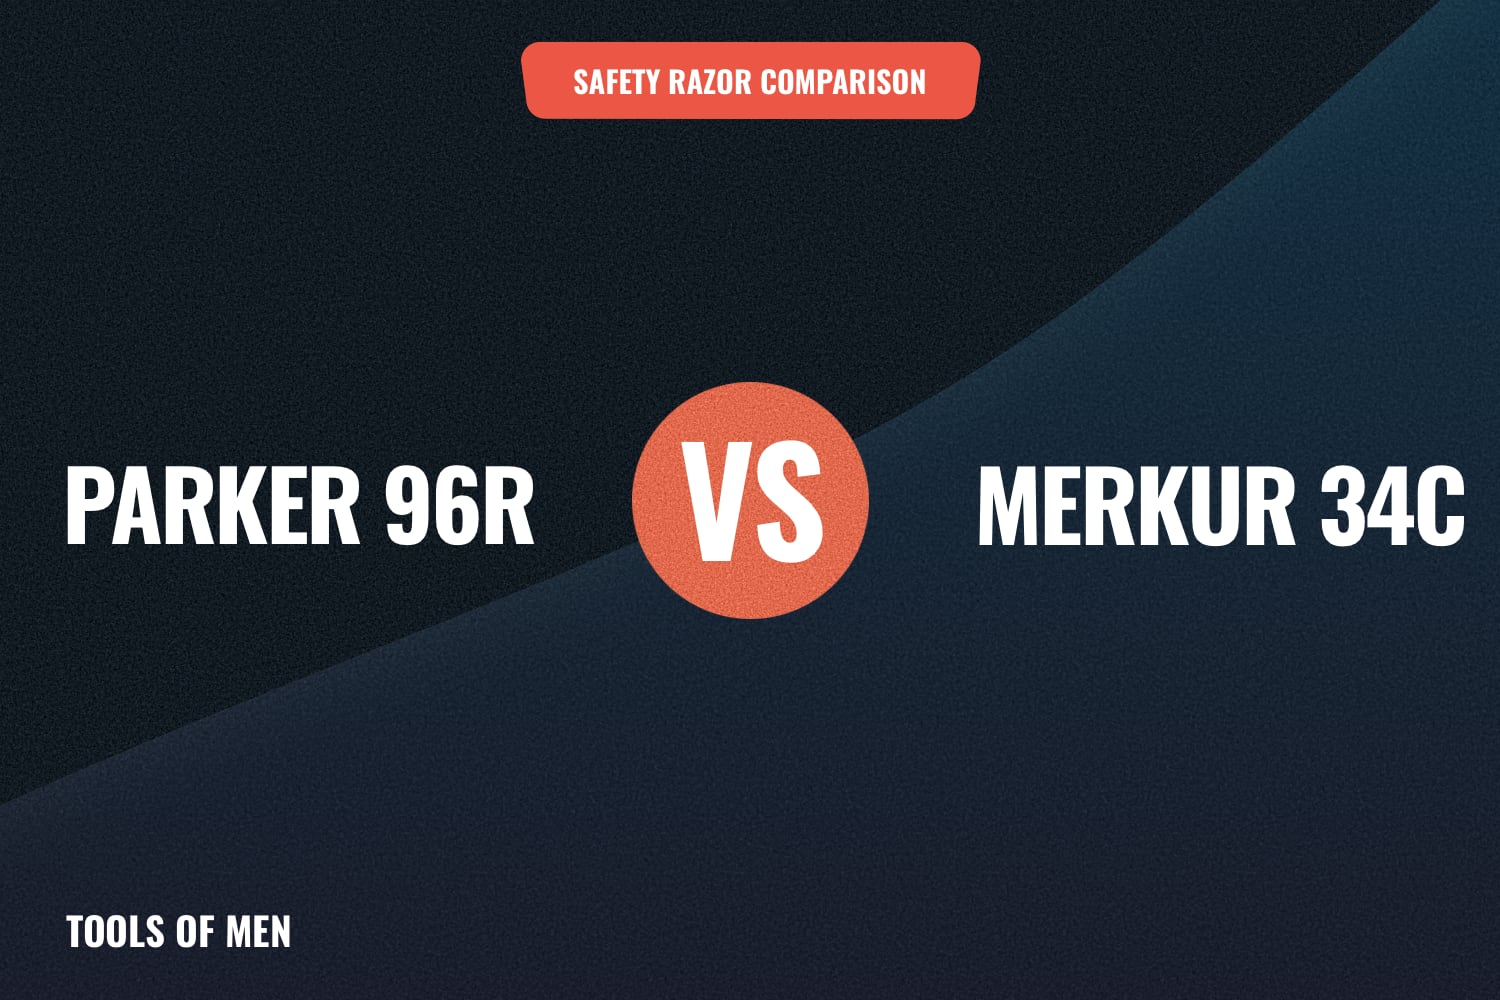 parker 96r vs merkur 34c feature image 1